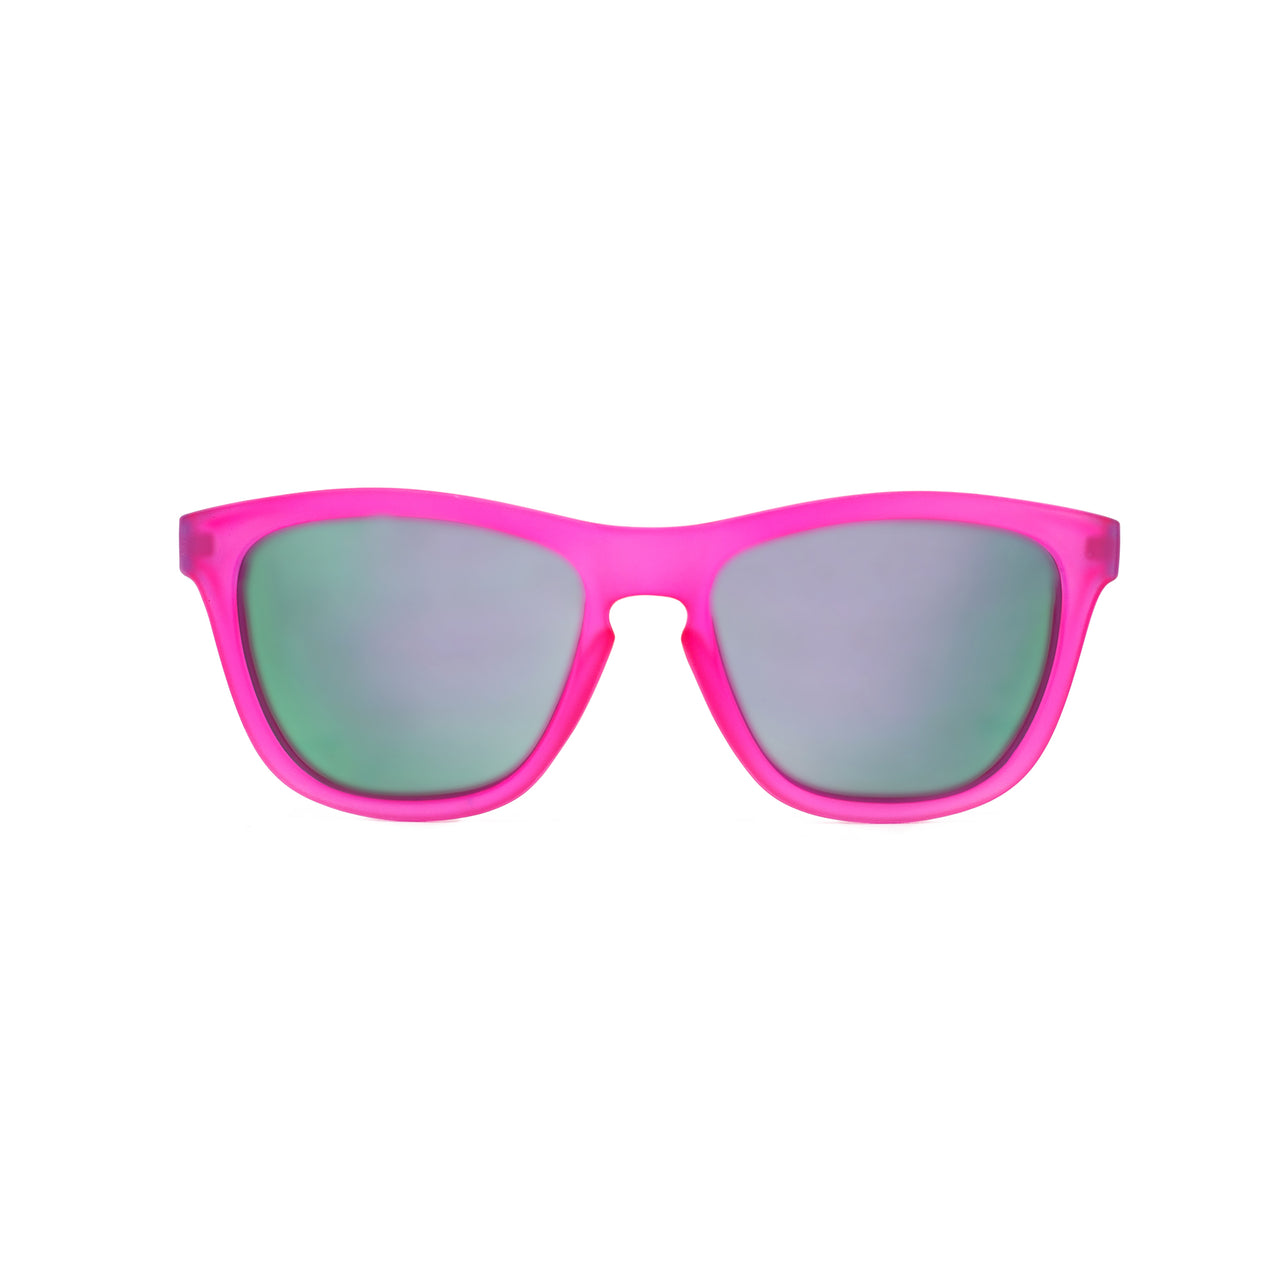 Beaches Polarized Sunglasses | Maui Jim®